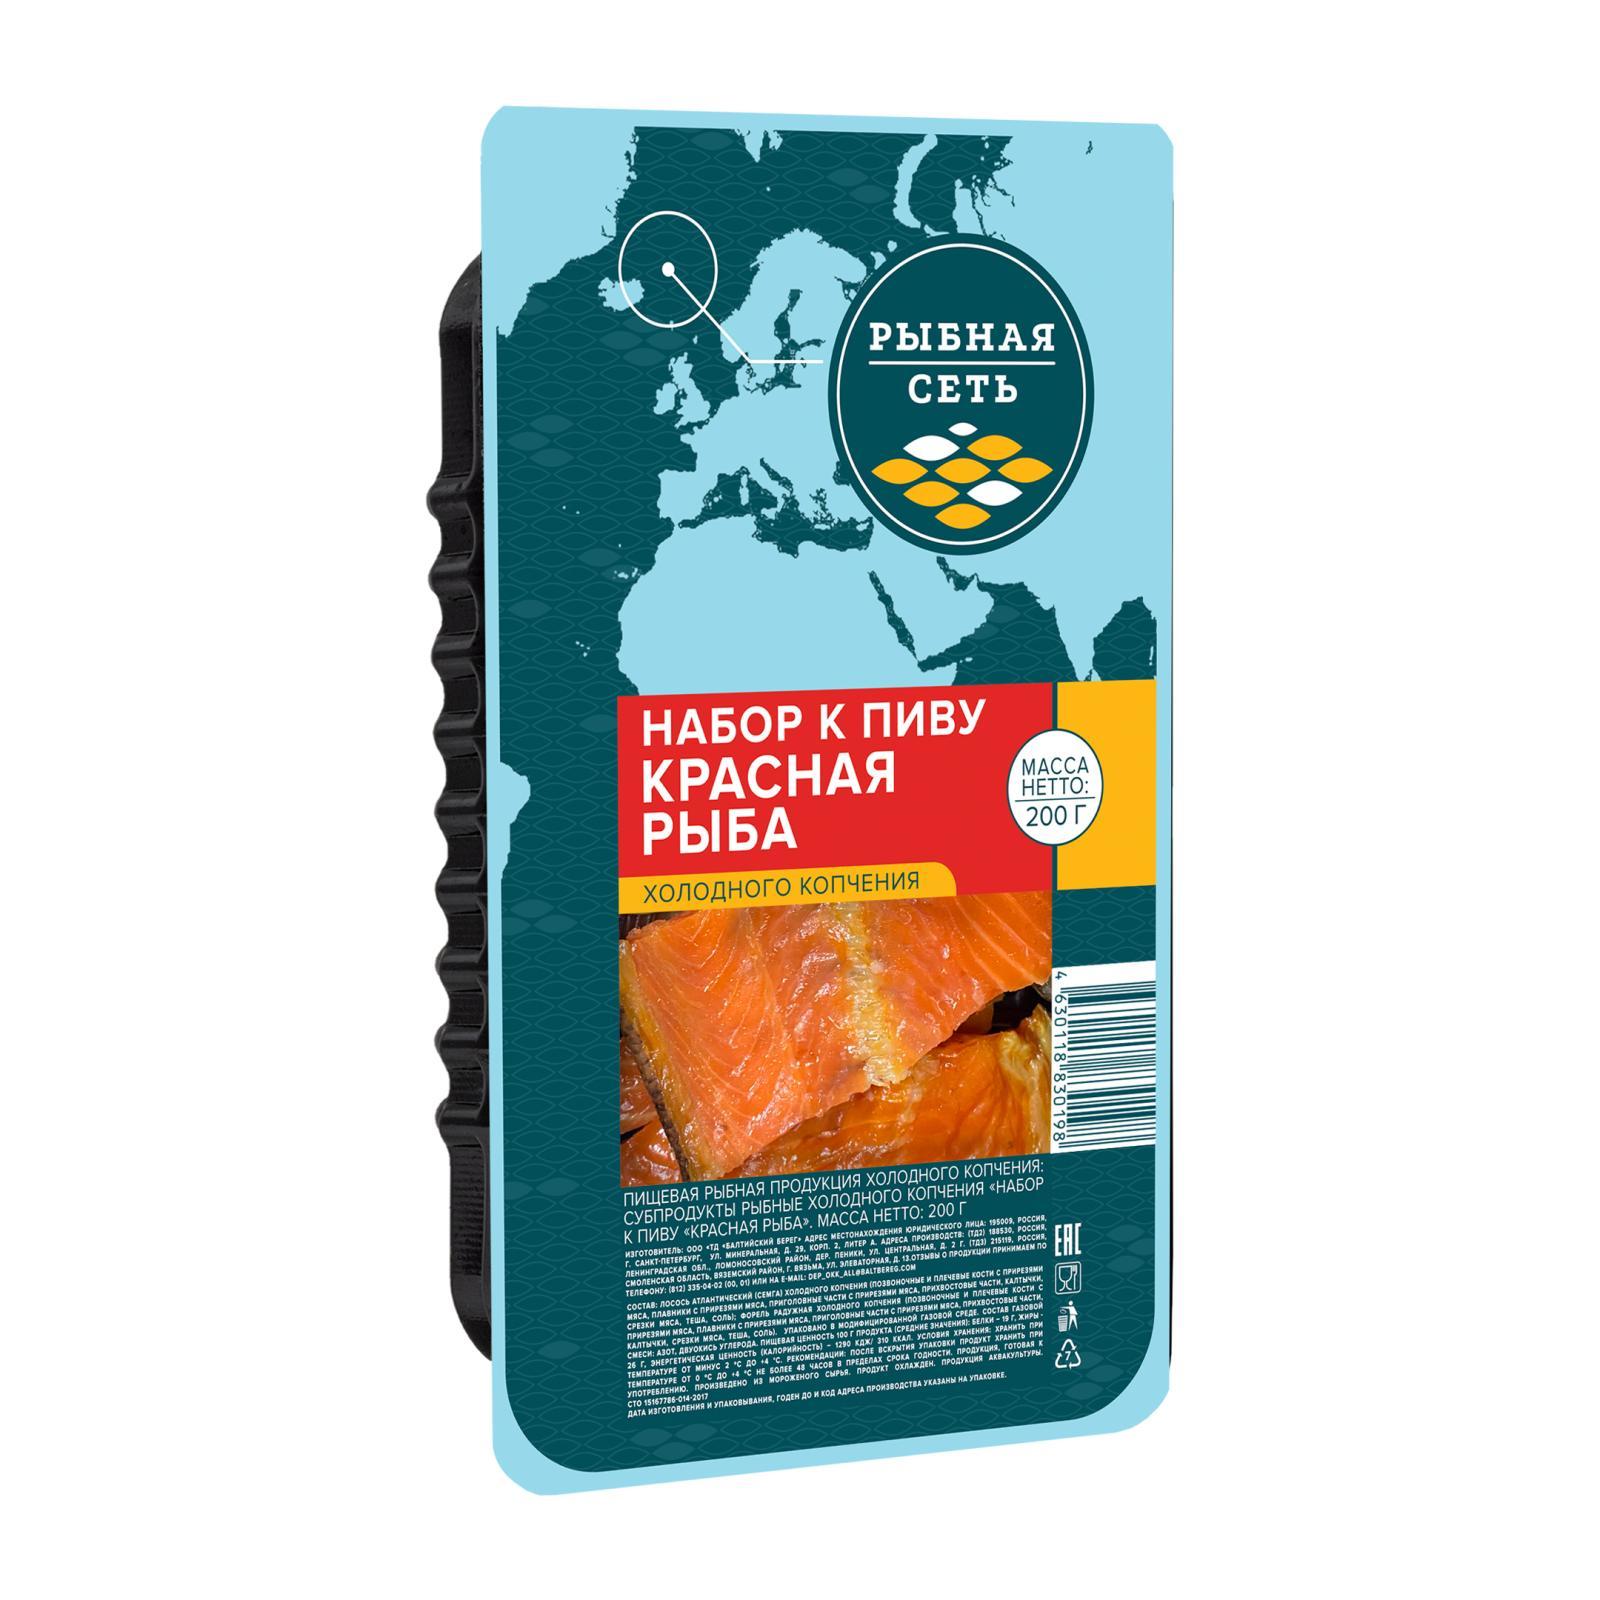 Набор рыбный к пиву Рыбная сеть Красная рыба холодного копчения 200 гр., пластик